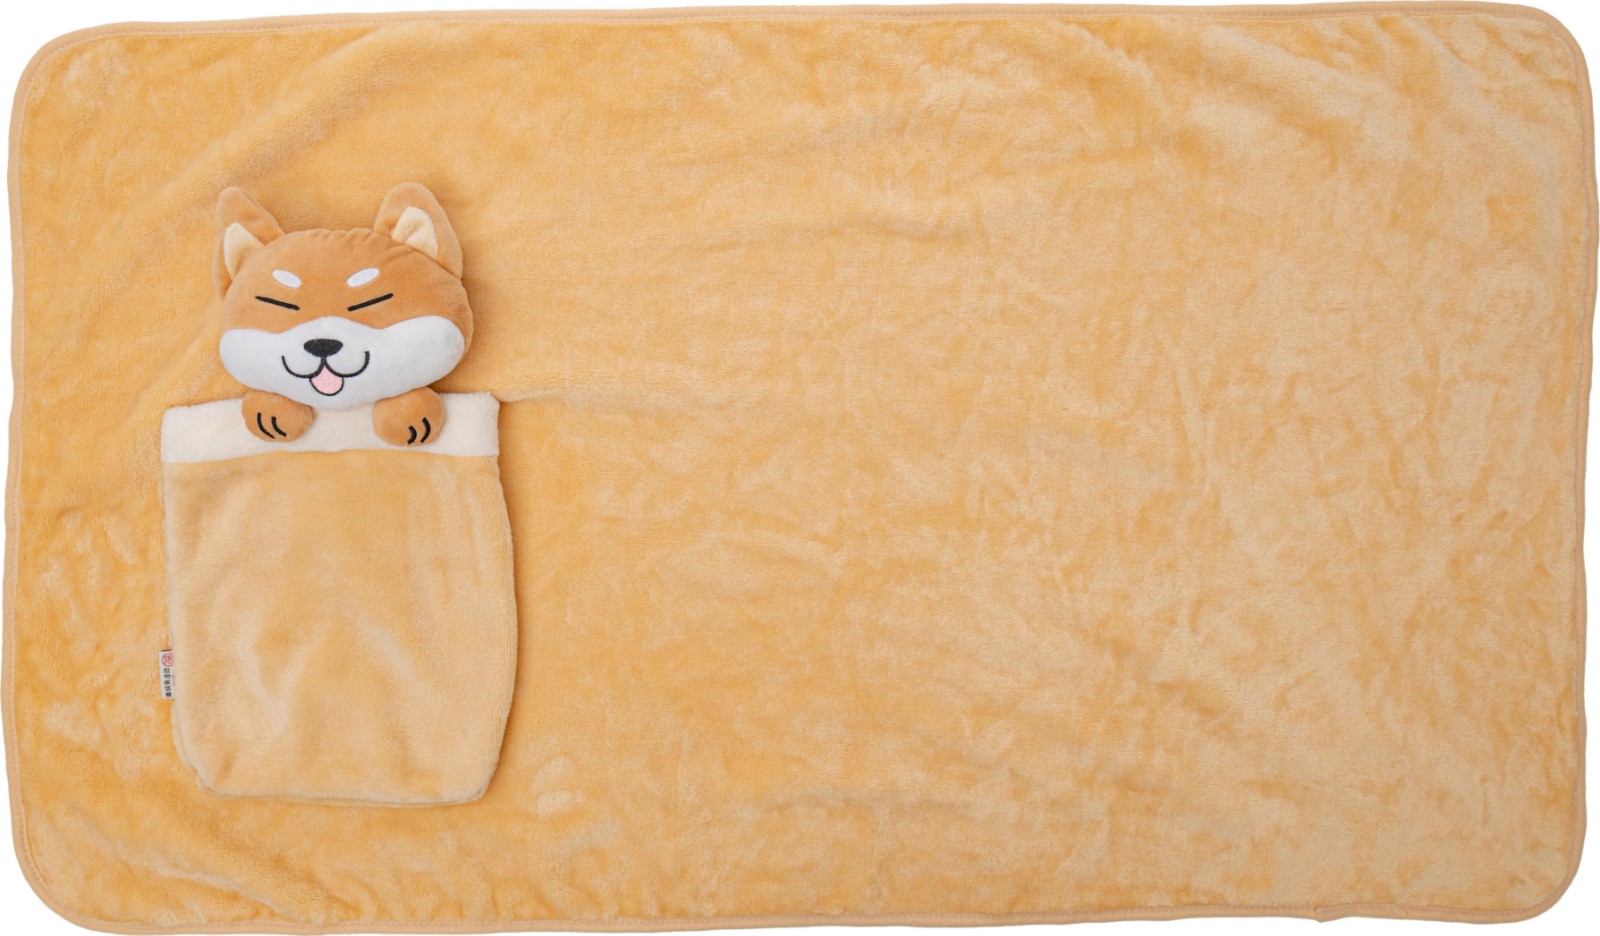 可愛動物造型口袋毯 冷氣毯